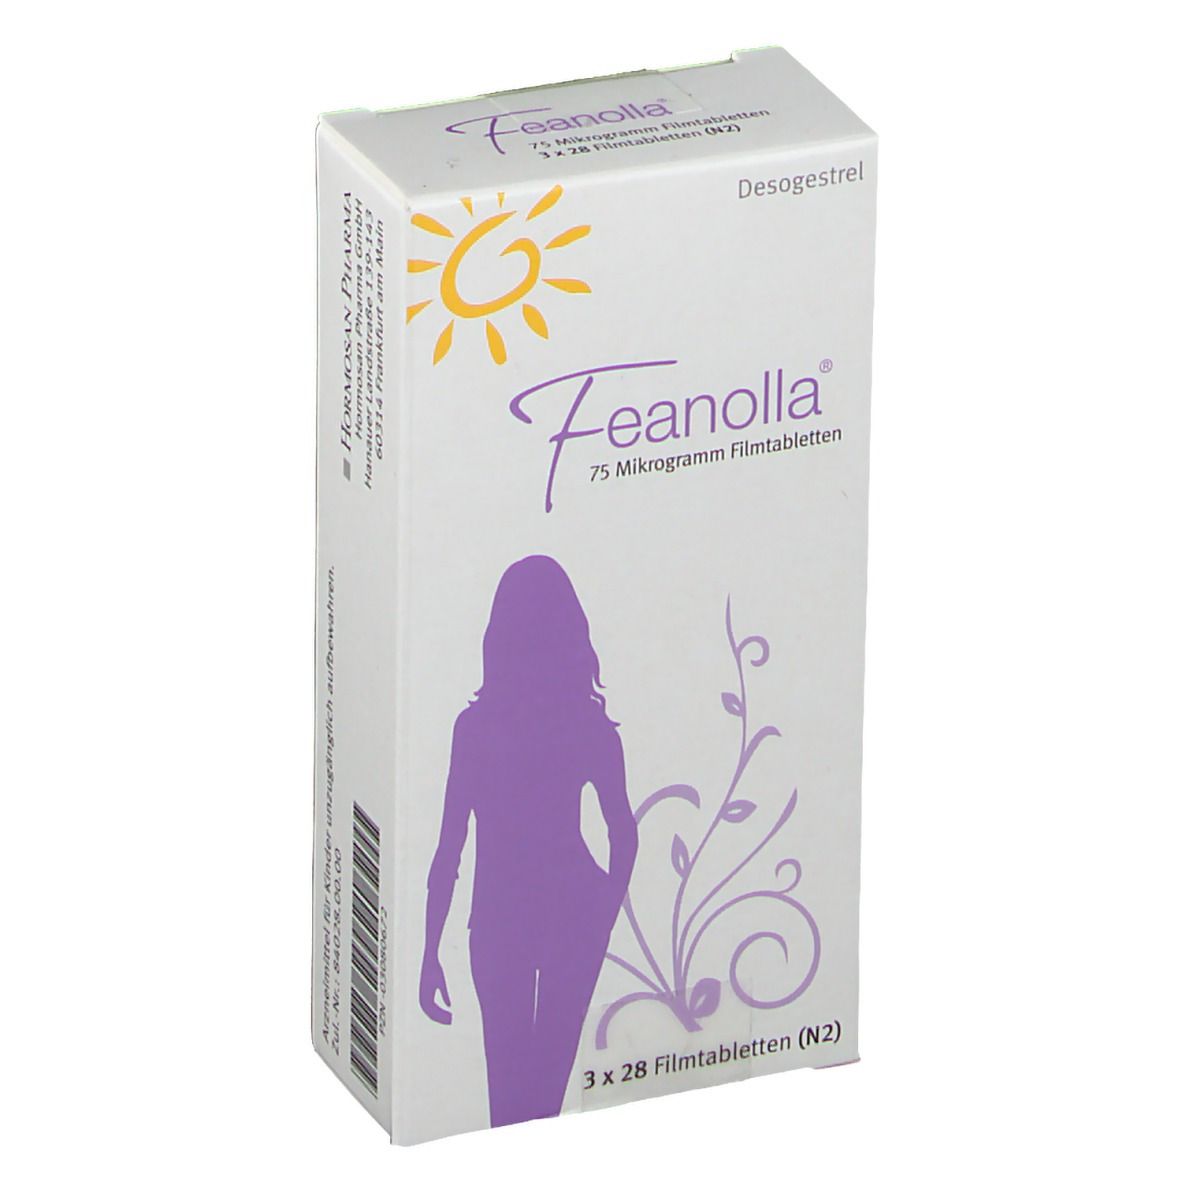 Feanolla® 75 Mikrogramm